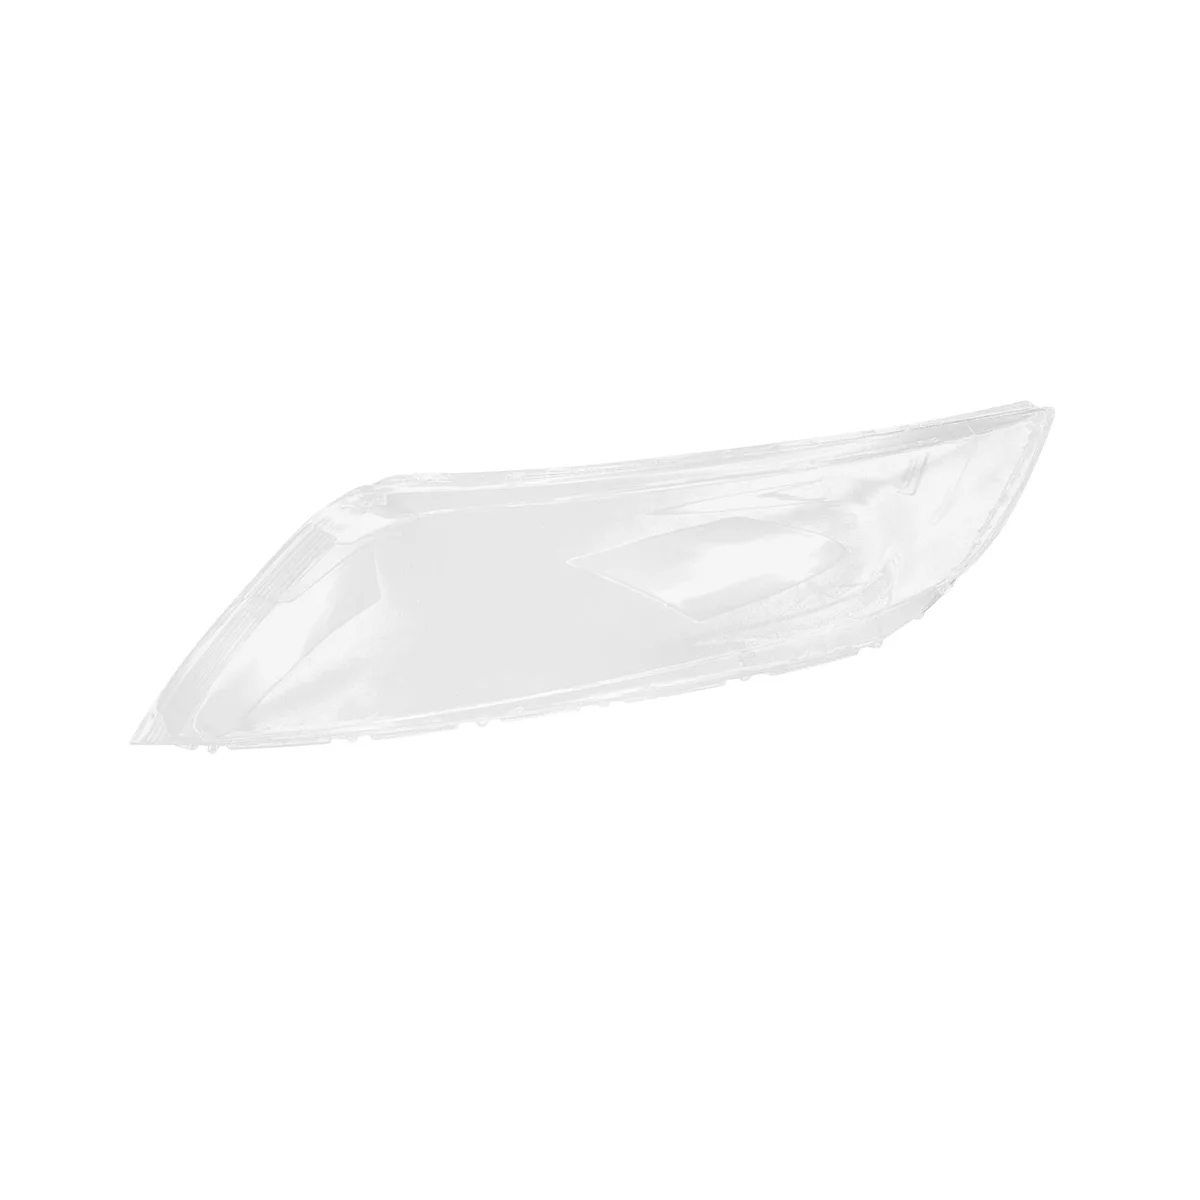 Față Stânga Faruri Capacul Transparent Cap de Lumină Lampă cu Lentile Faruri Masca pentru Kia K5 2014 2015